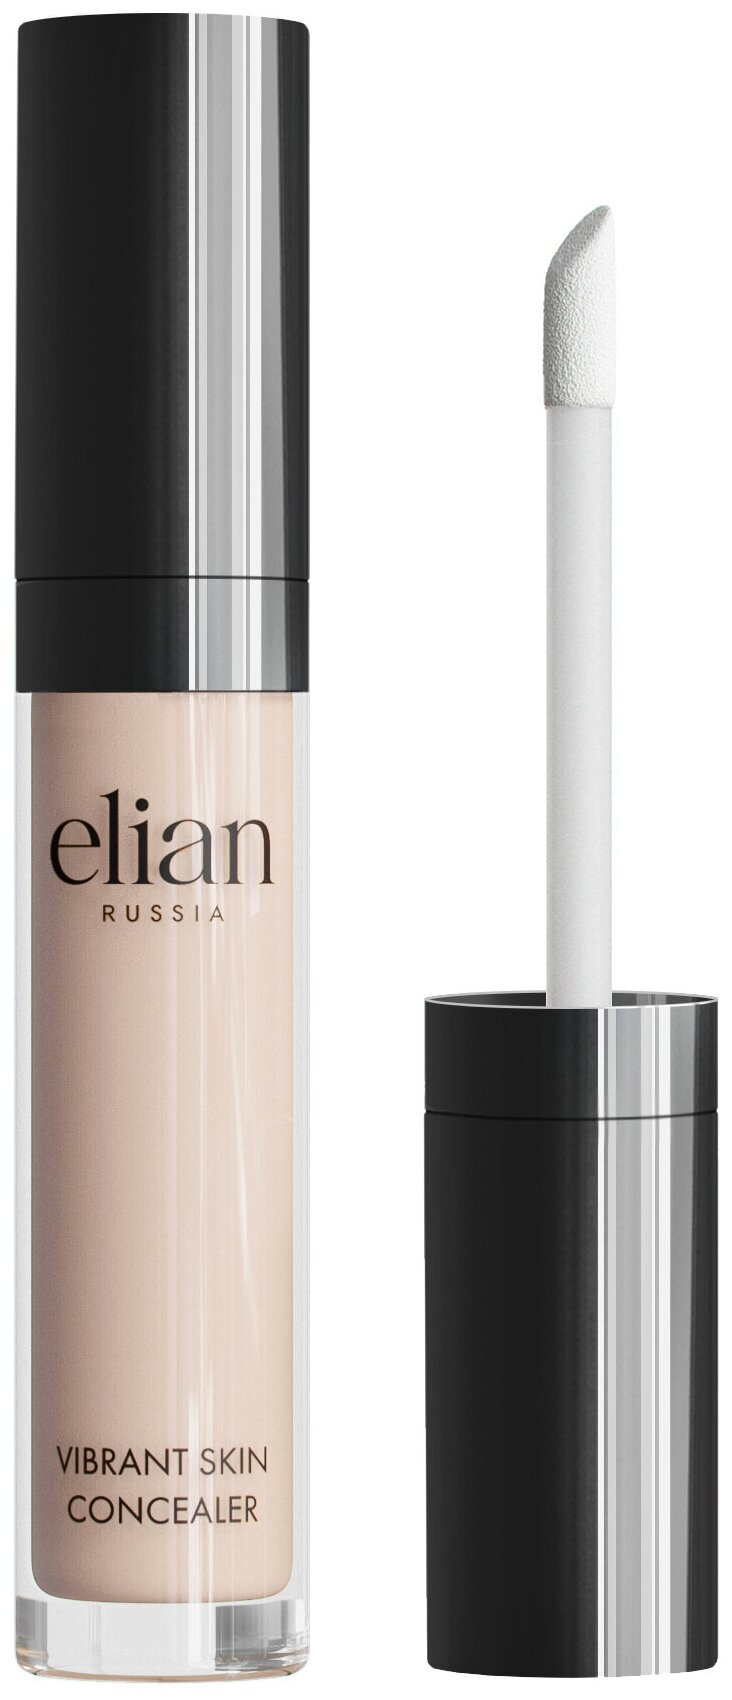 Кремовый консилер Vibrant Skin Concealer, Elian Russia (02 Light)